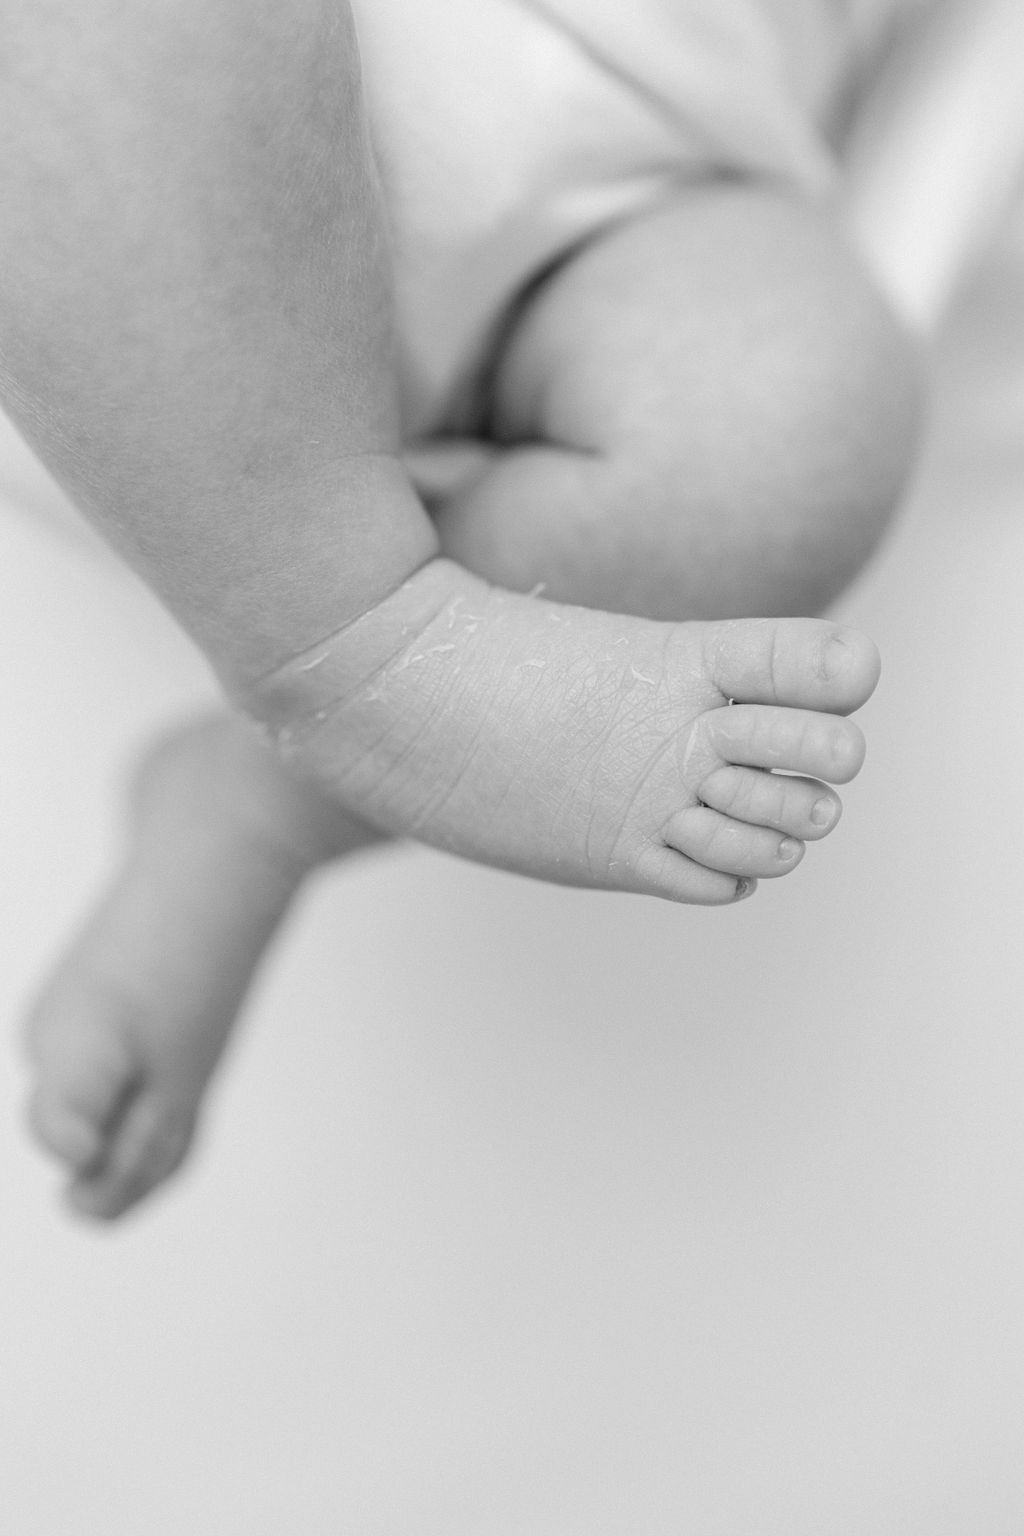 Details of a newborn baby's feet